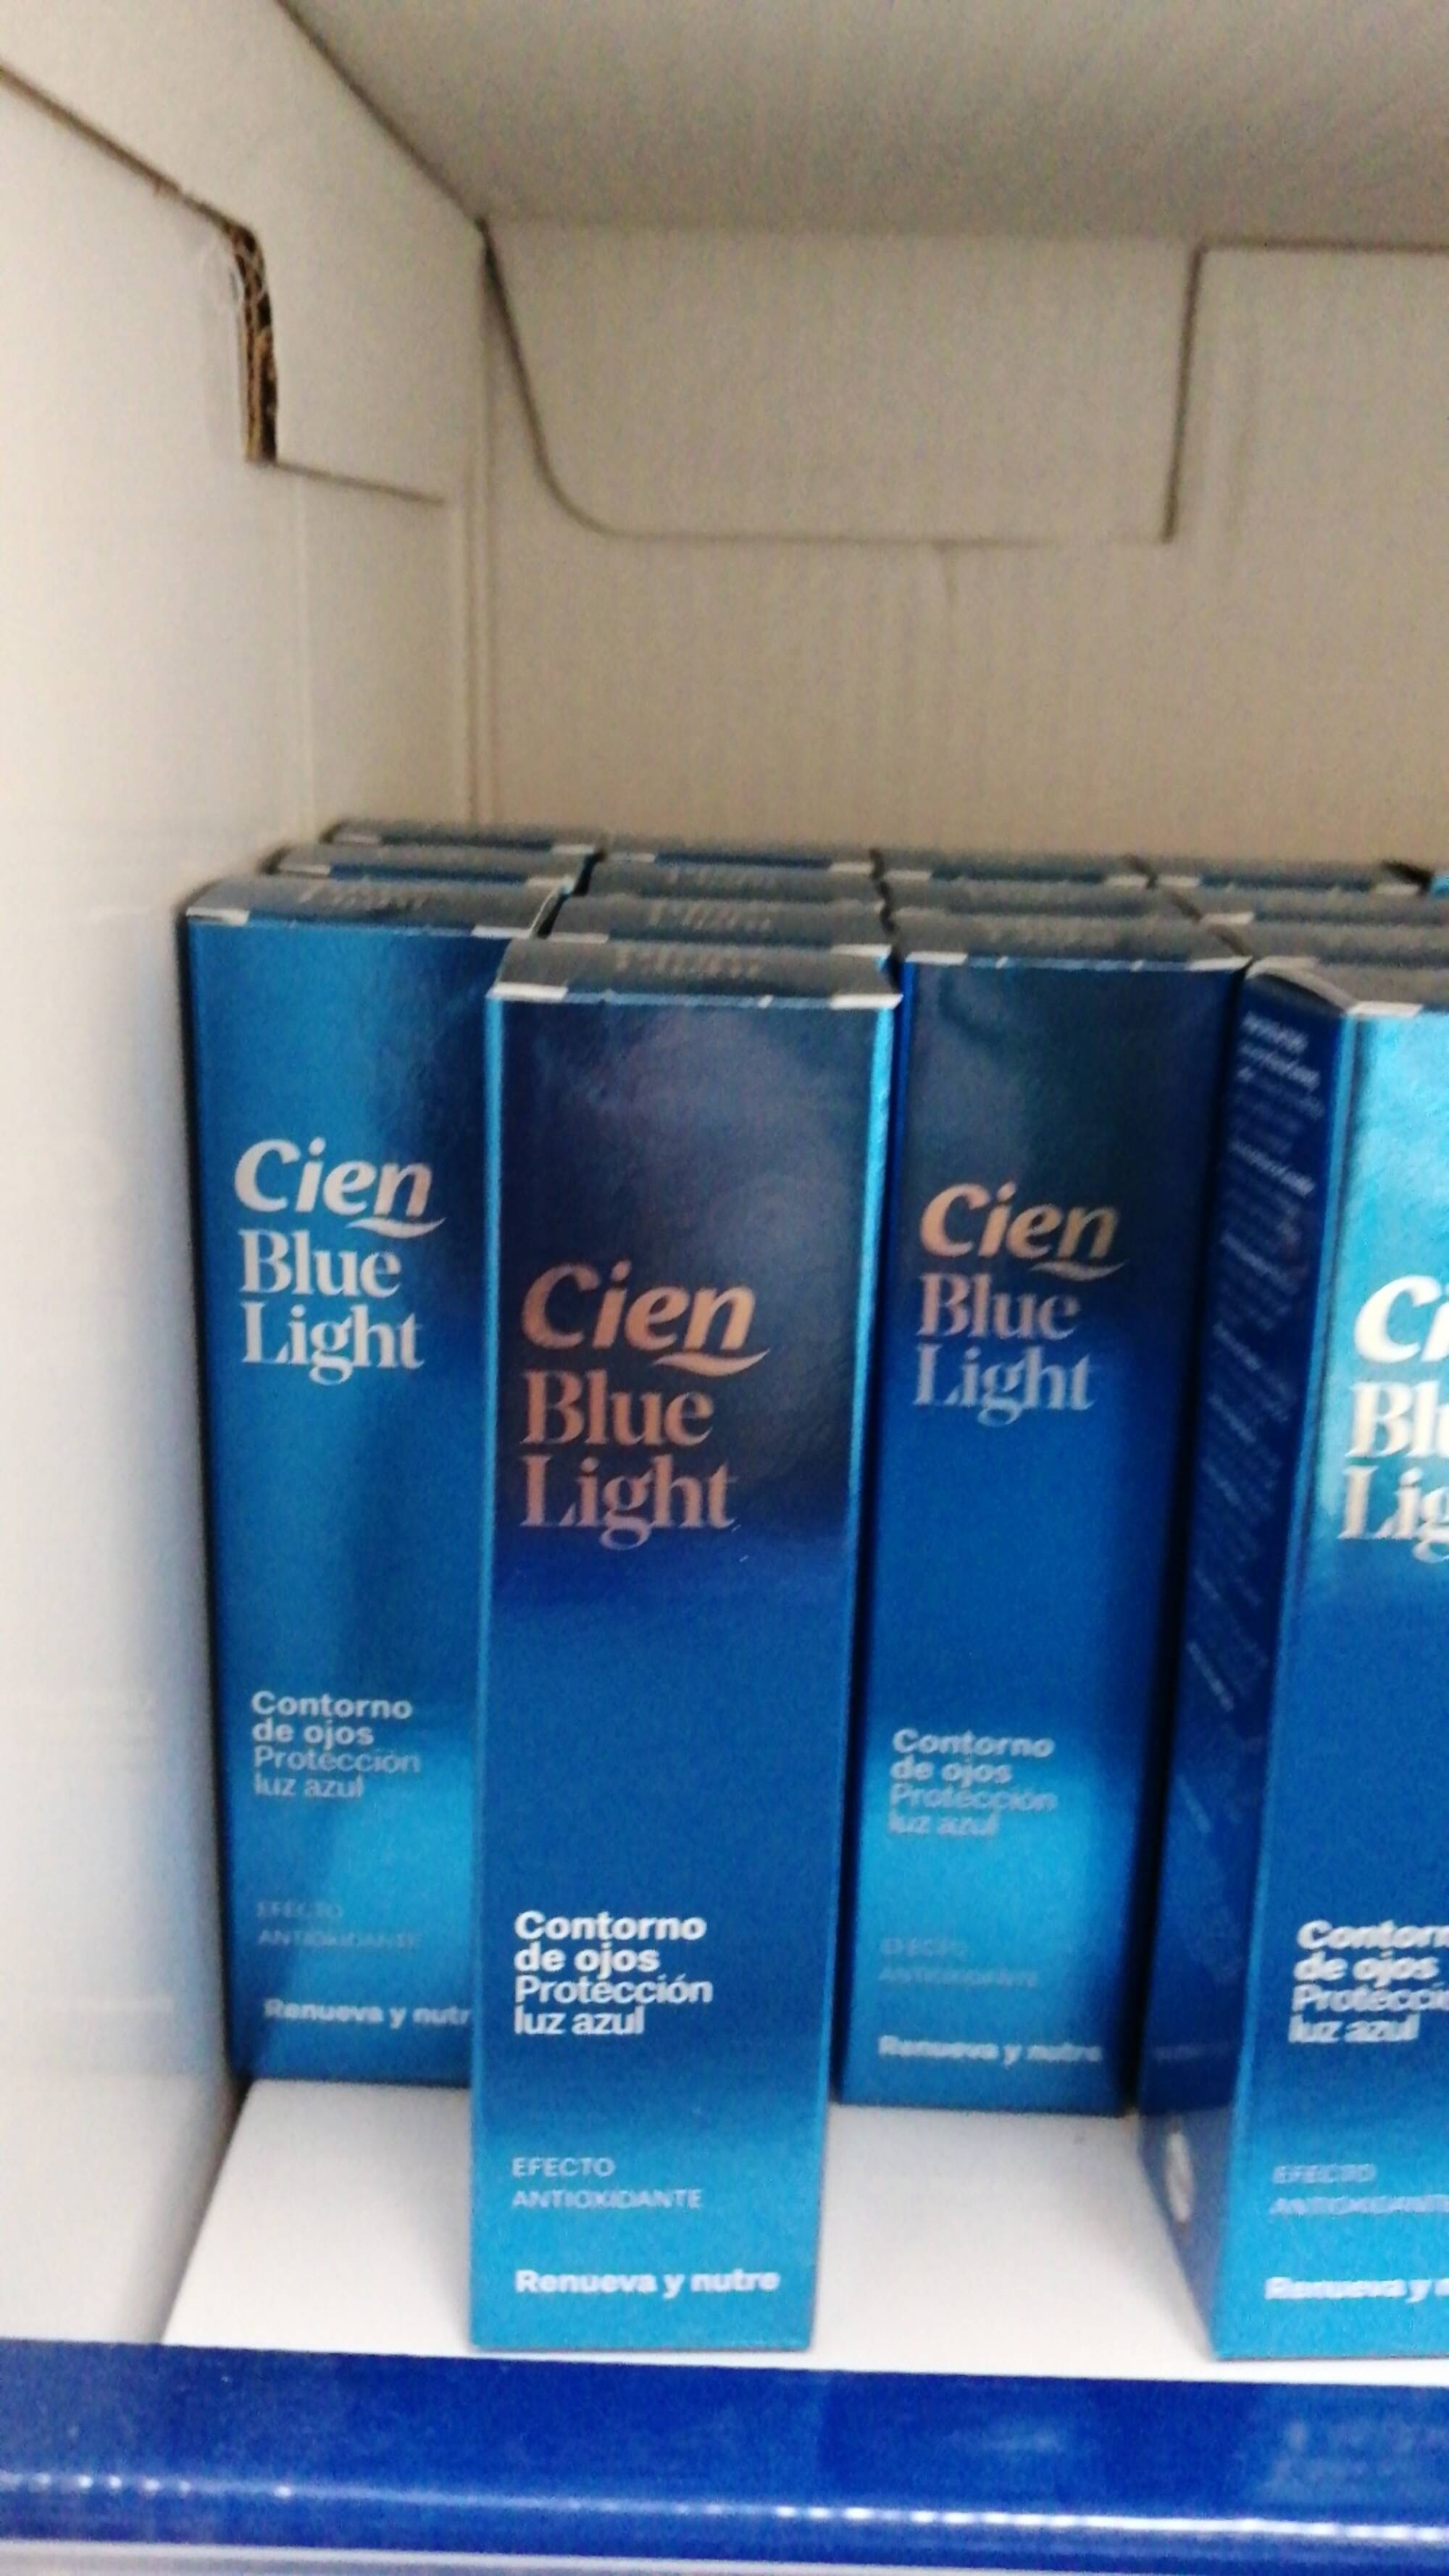 CIEN - Blue light - Contorno de ojos